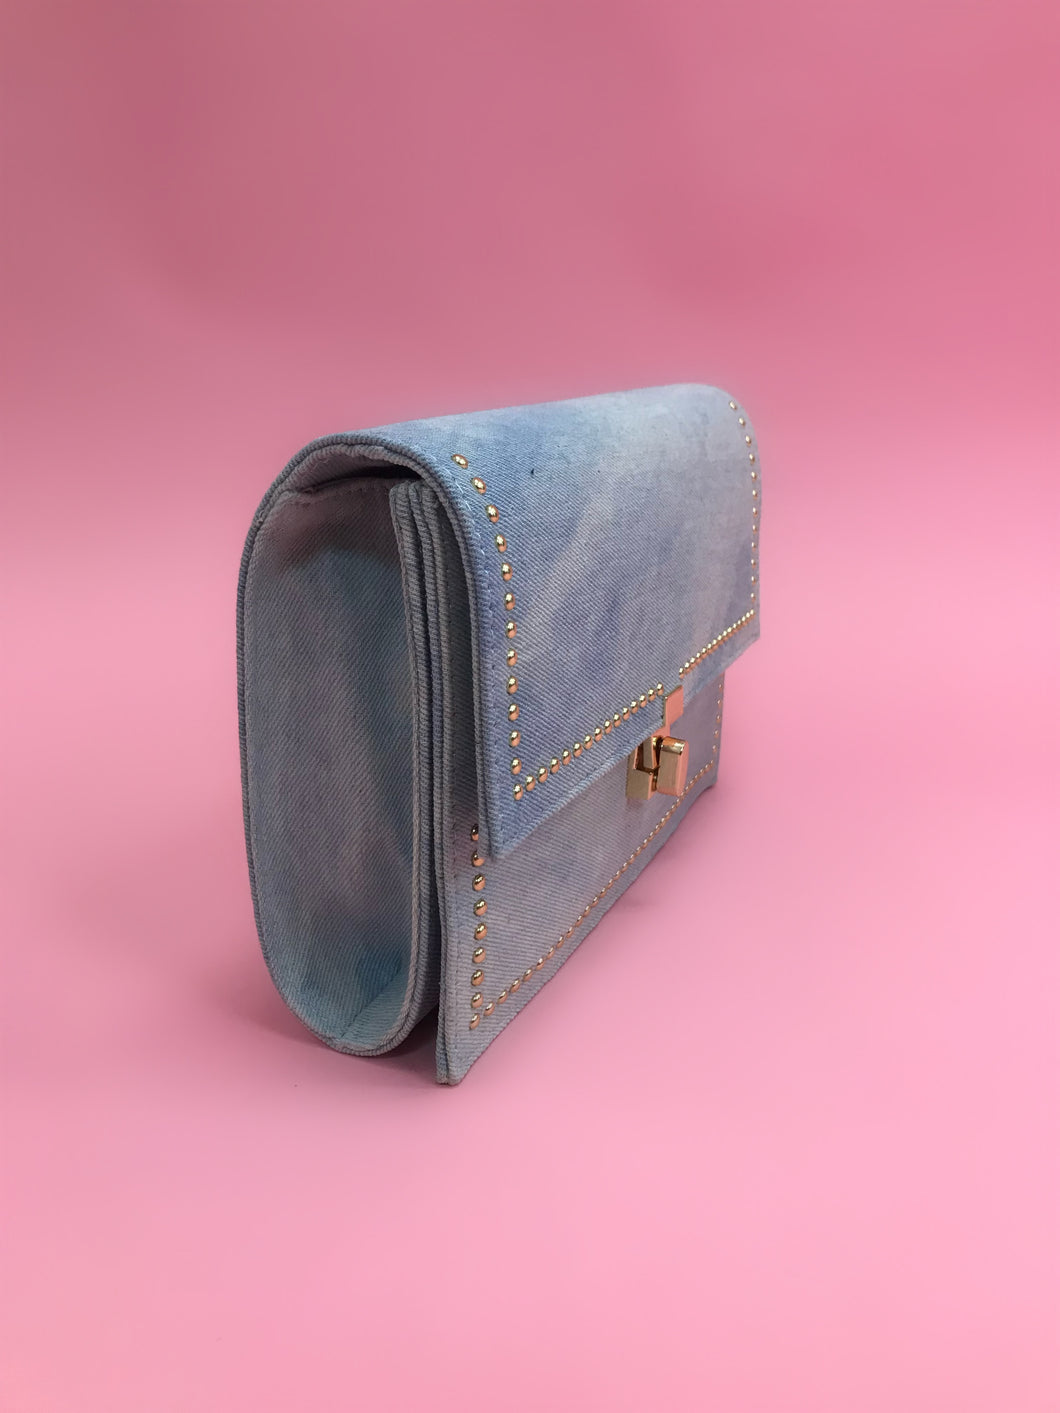 Light Blue Jean Handbag